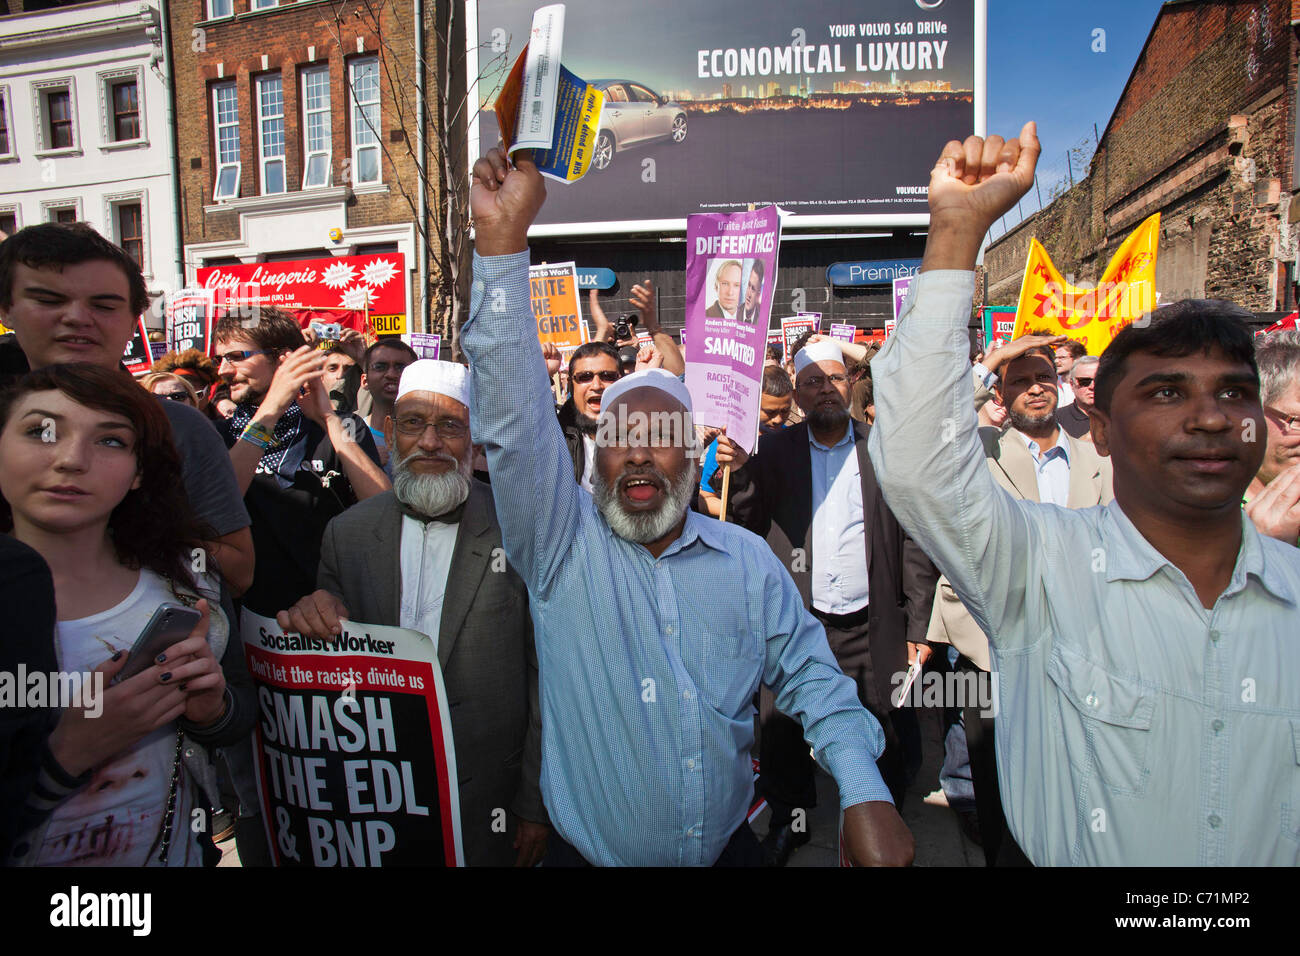 Unire le forze contro il fascismo manifestazione contro l'EDL. Whitechapel, a est di Londra. Questa zona è prevalentemente un'area asiatica. Foto Stock